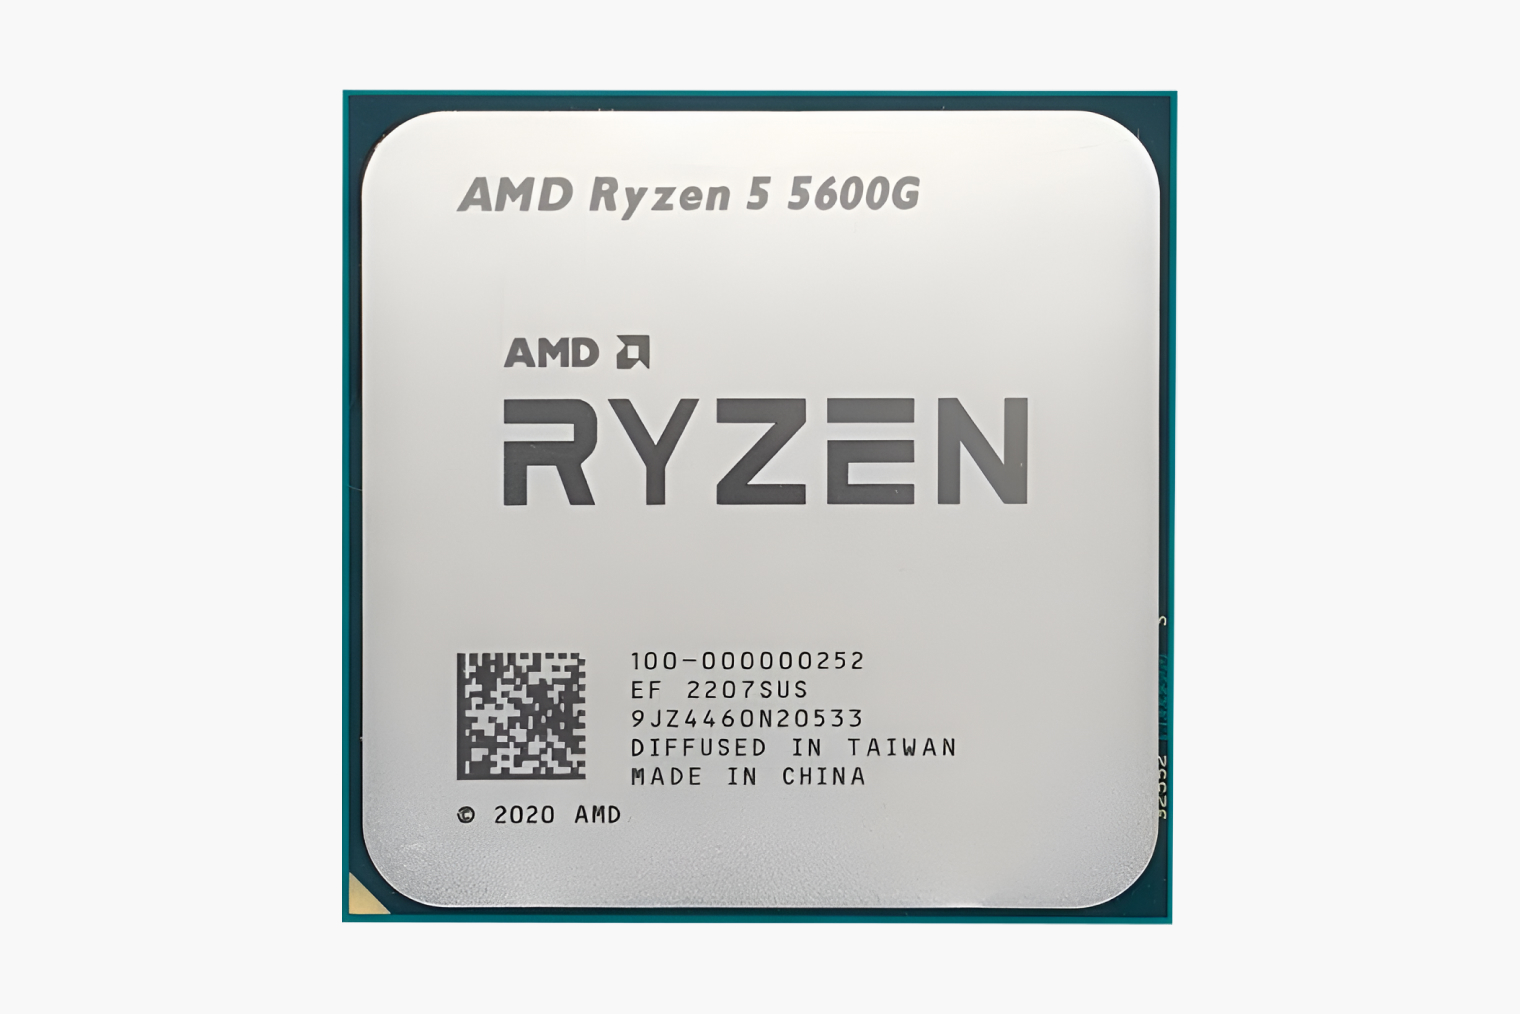 У процессора Ryzen 5 5600G достаточно мощная встроенная графика, чтобы запускать почти любые игры на минимальных настройках. Он стоит около 13 000 ₽